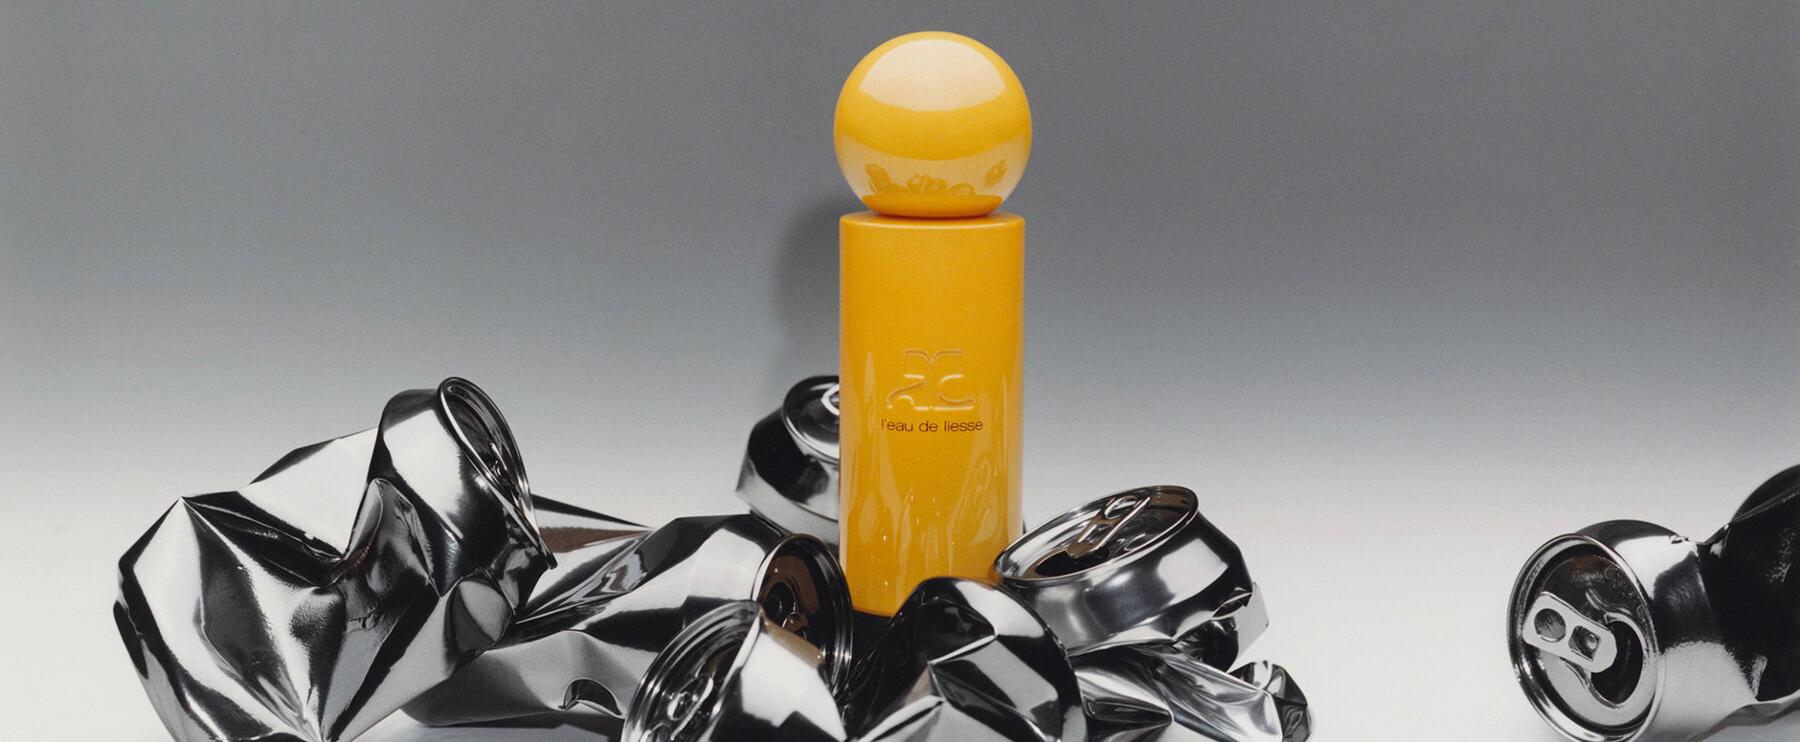 „L'Eau de Liesse“ - Neues Parfum des französischen Modelabels Courrèges